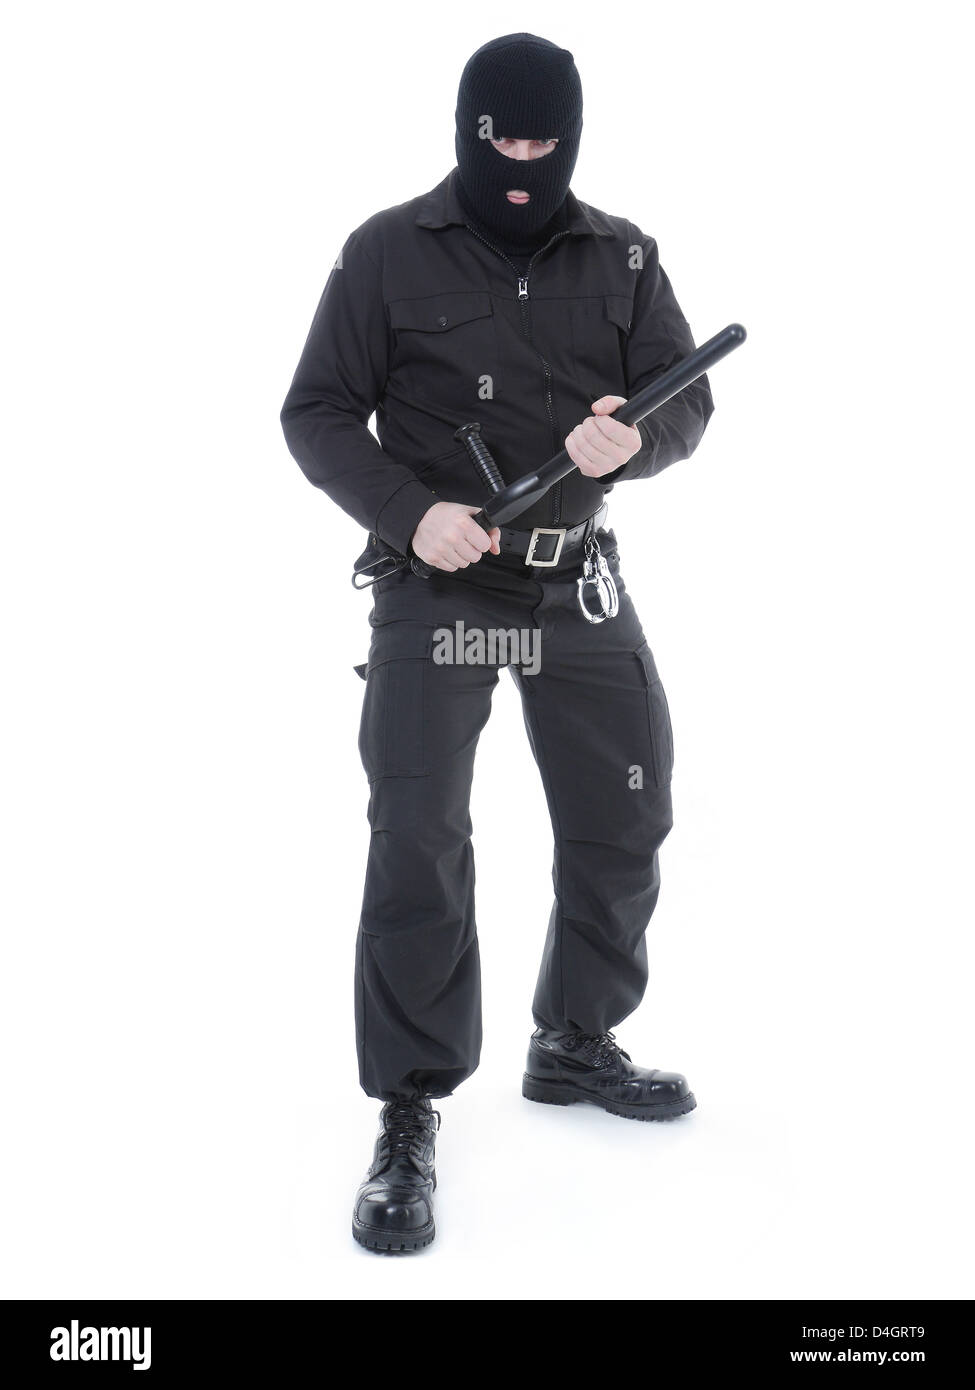 La polizia antiterrorismo ragazzo indossa il nero uniforme e maschera nera tenendo saldamente police club in entrambe le mani pronte per entrare in azione Foto Stock